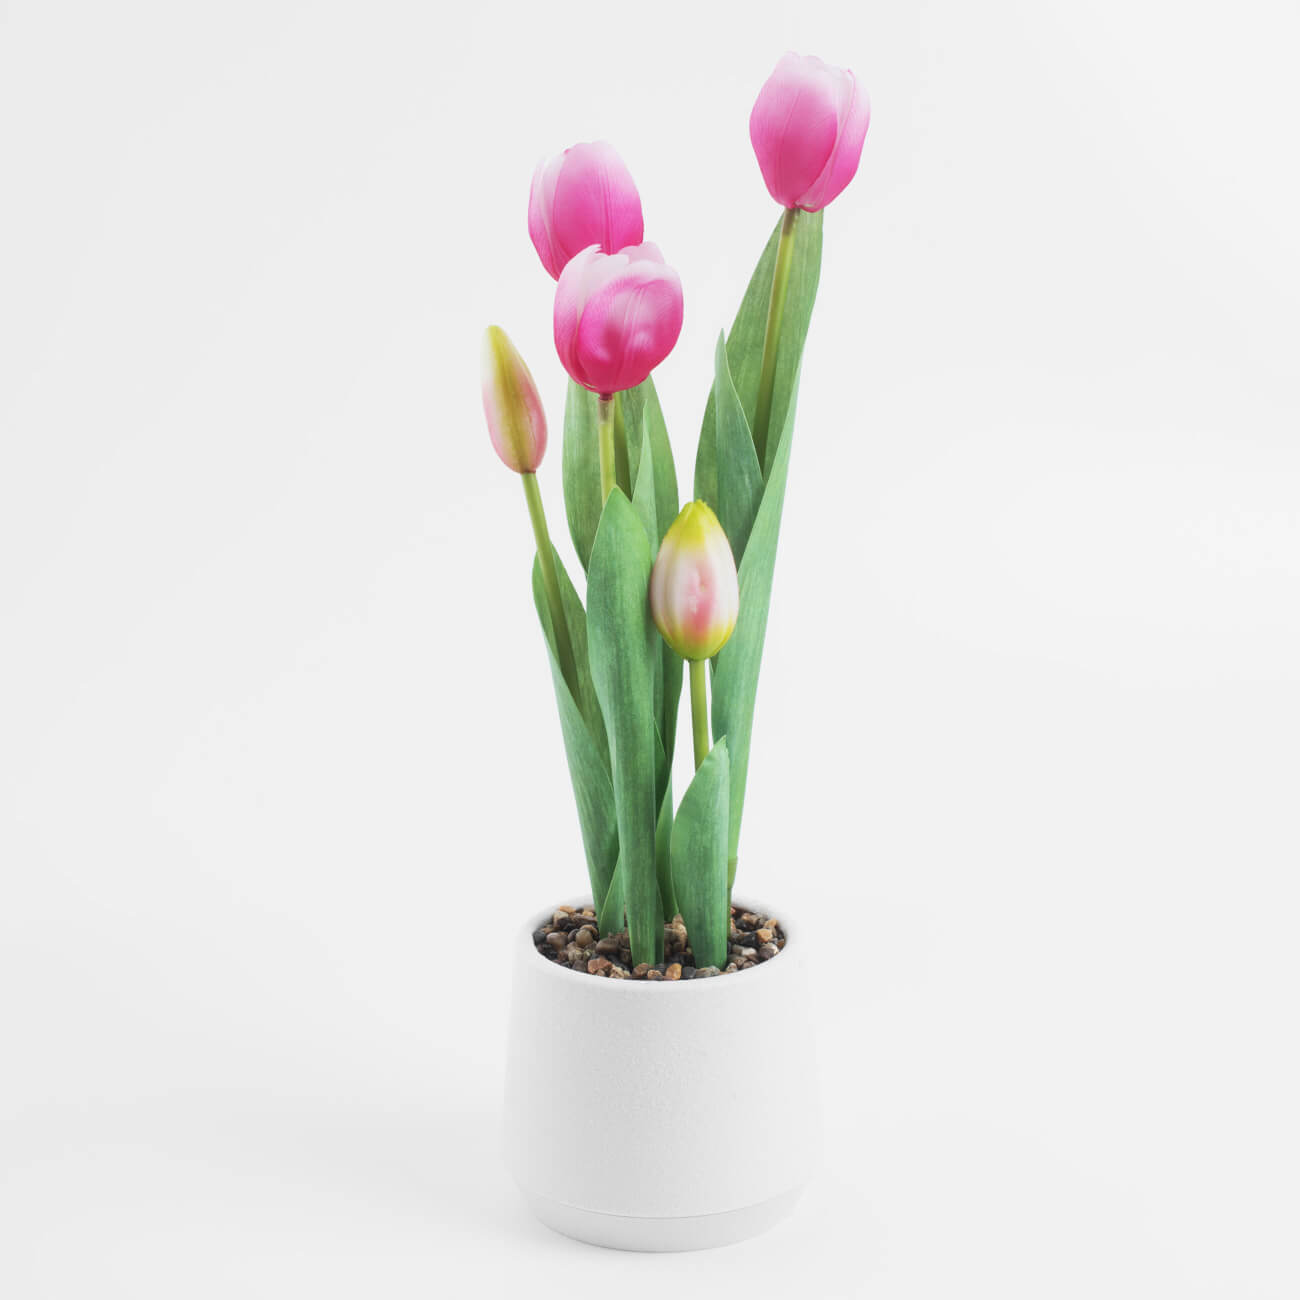 Растение искусственное, 36 см, в горшке, полиэстер/пластик, Розовые тюльпаны, Tulip garden стул tetchair secret de maison tulip mod 73 дерево пластик пу желтый